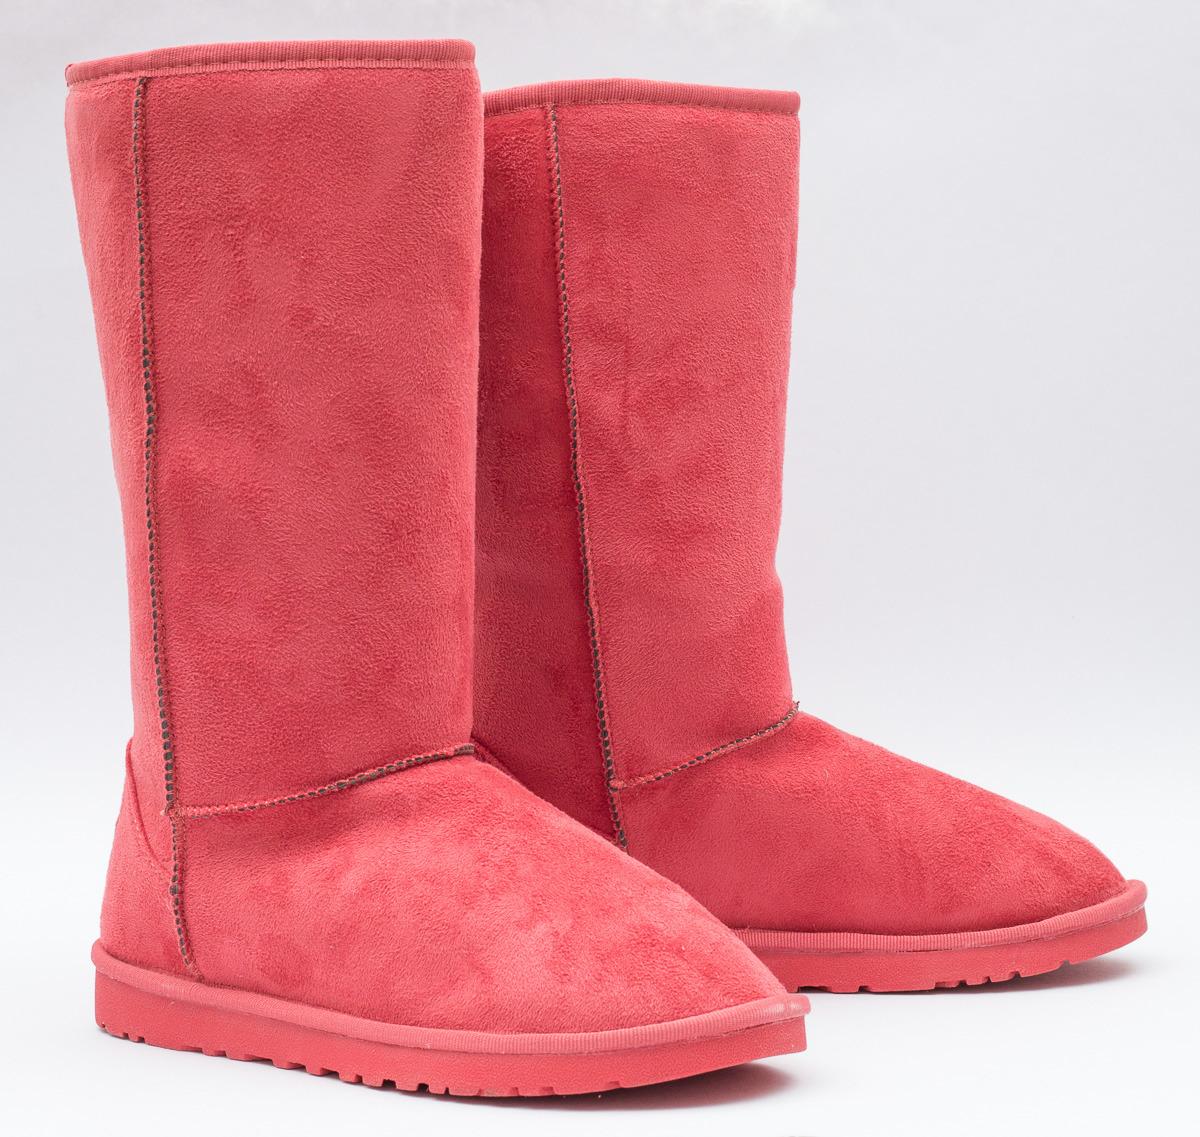 Luxusní růžové válenky vel. 36 - 349kč - Dámské boty